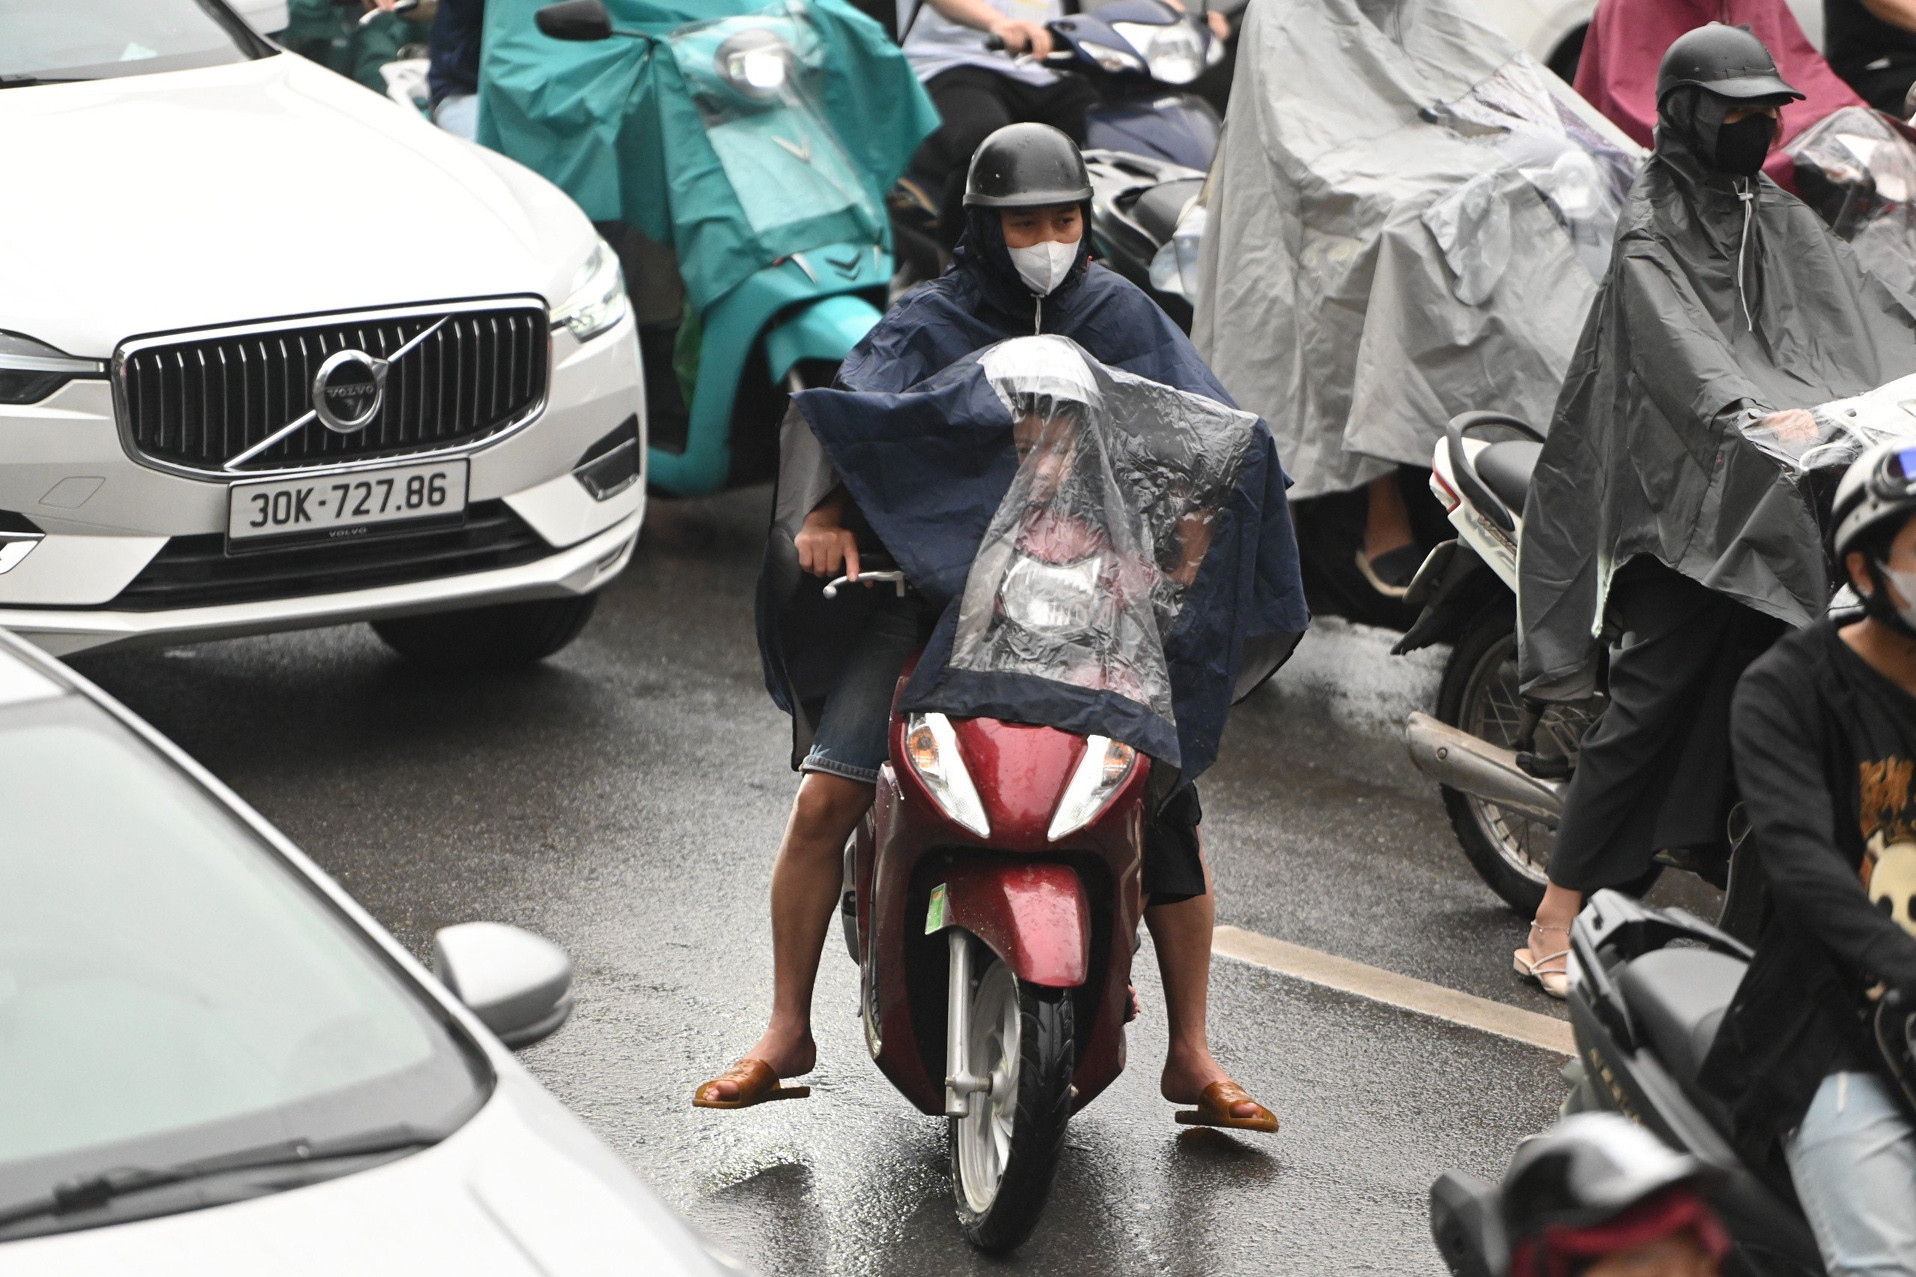  Đường Hà Nội ùn tắc, dòng người chật vật trong mưa giờ đi làm 